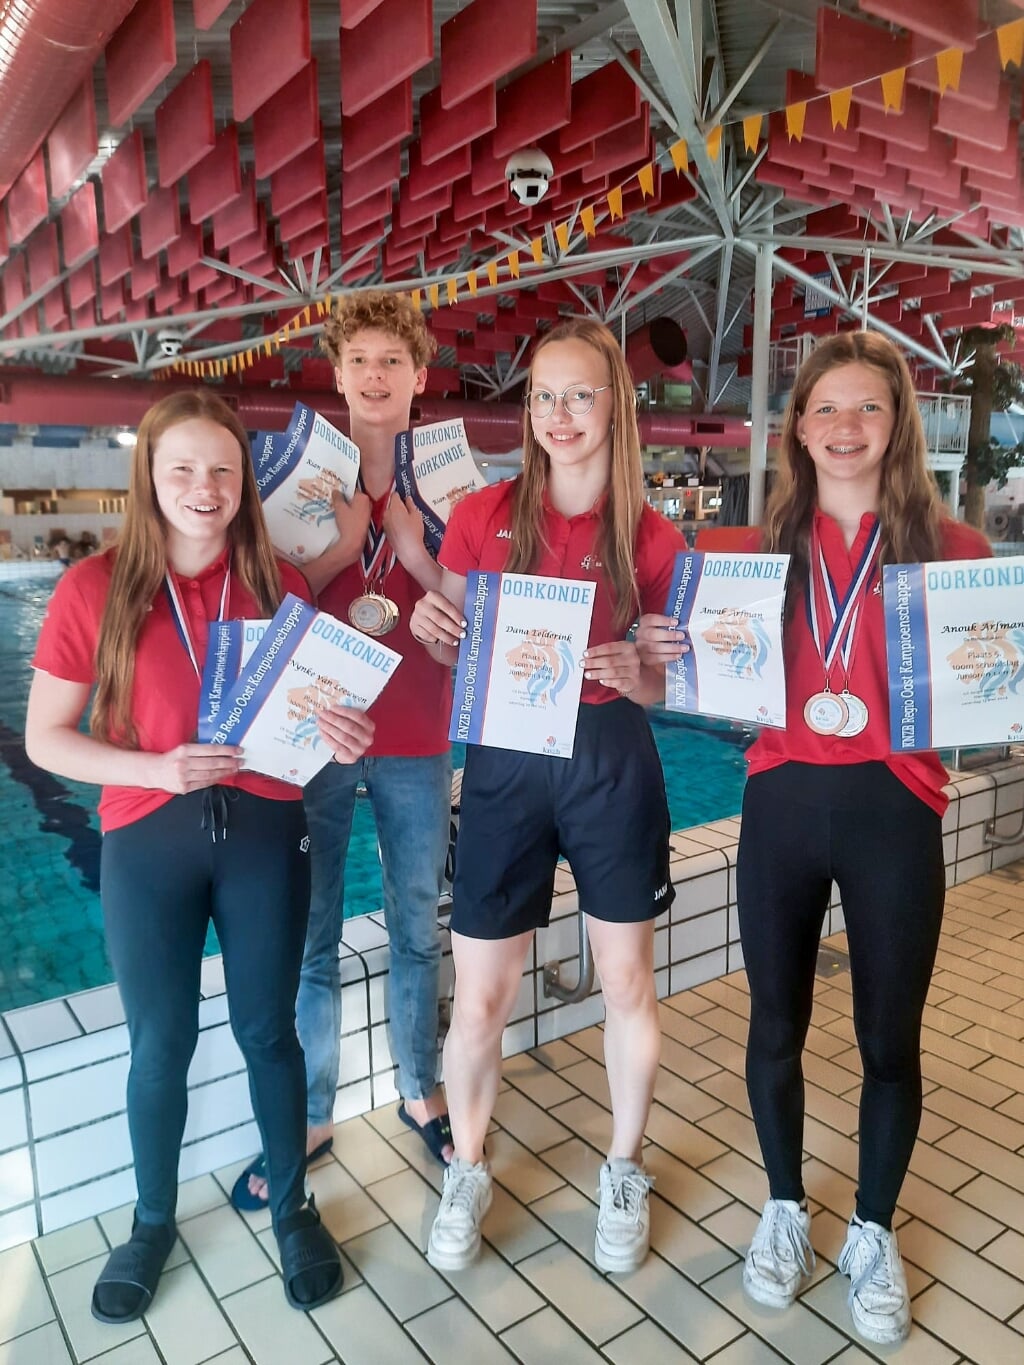 De zwemmers met hun medailles en oorkondes (Finn Ooijman ontbreekt op de foto). Foto: Karin Schoneveld